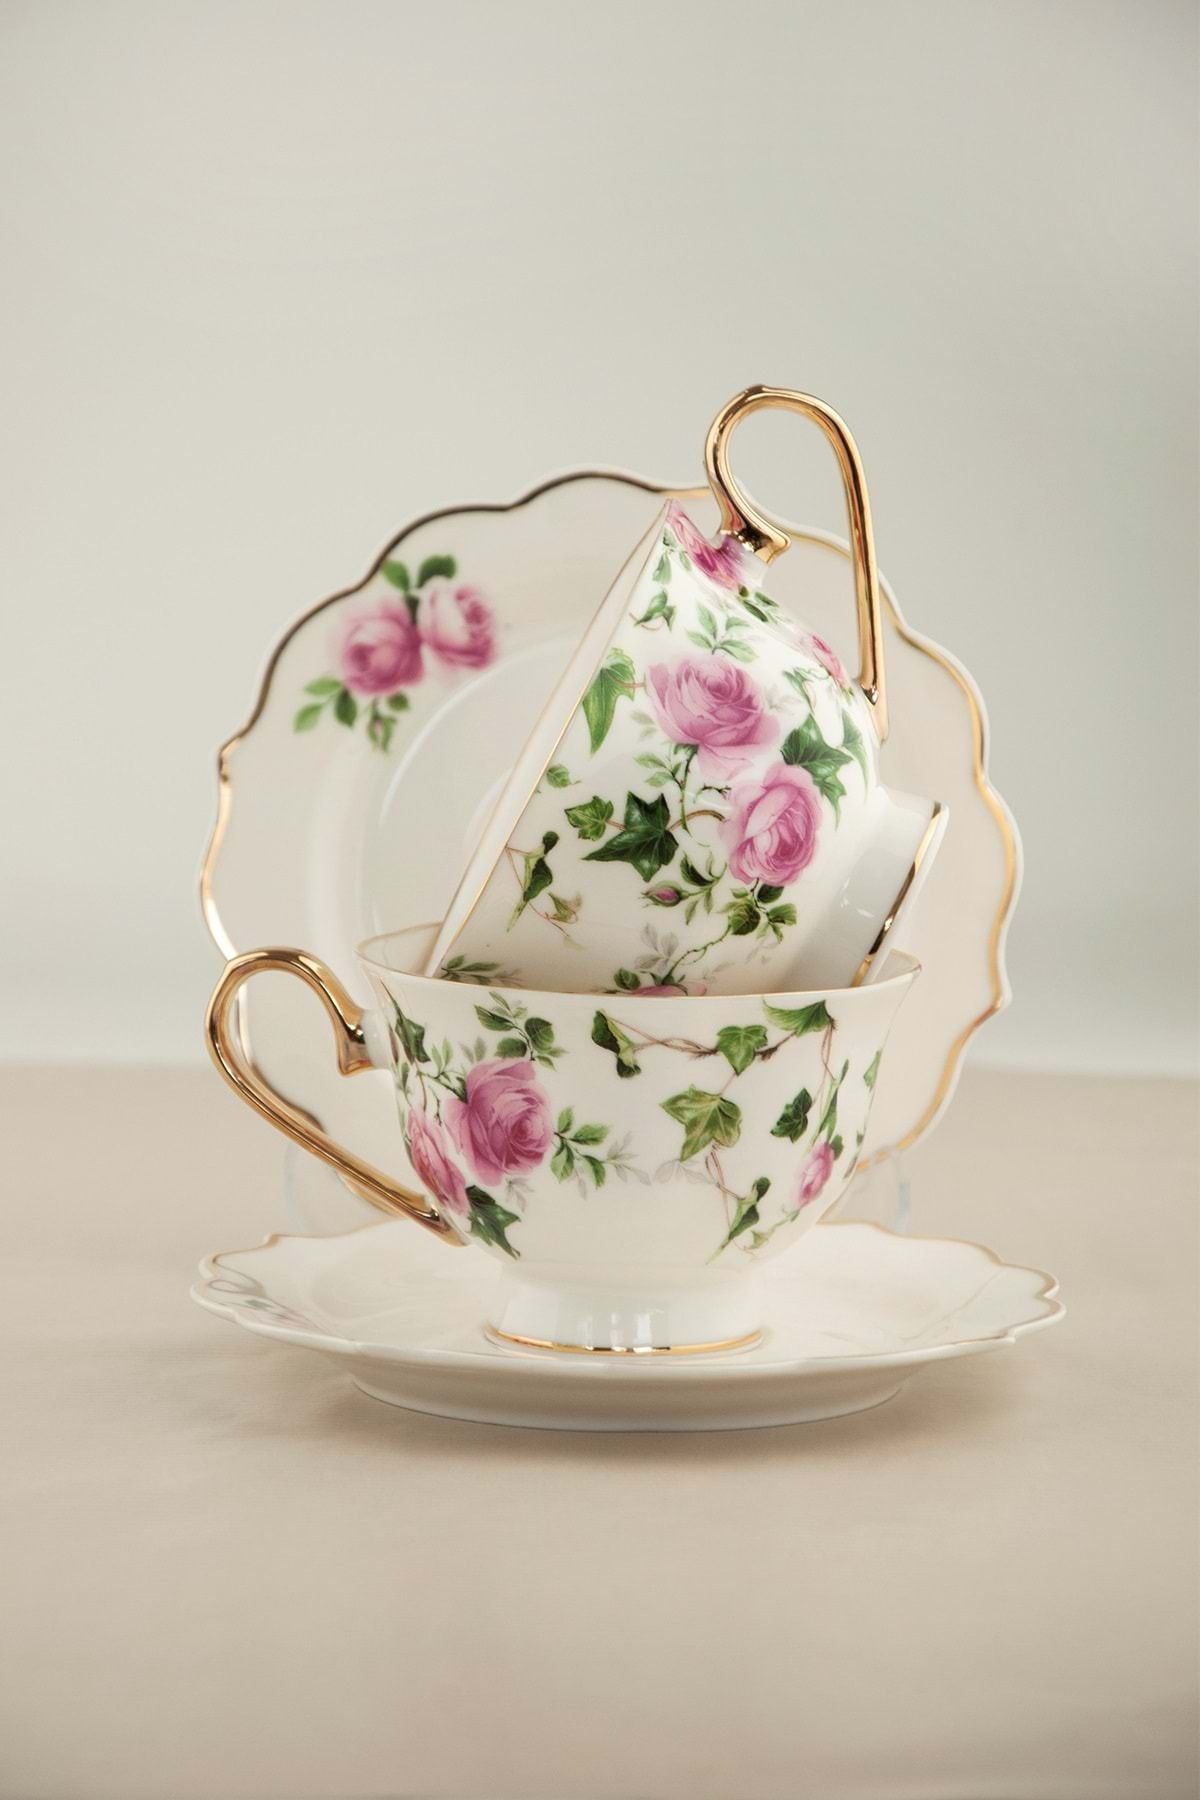 Bursa Porselen Dekor Pink ivy rose altın yaldızlı iki kişilik çay fincan takımı